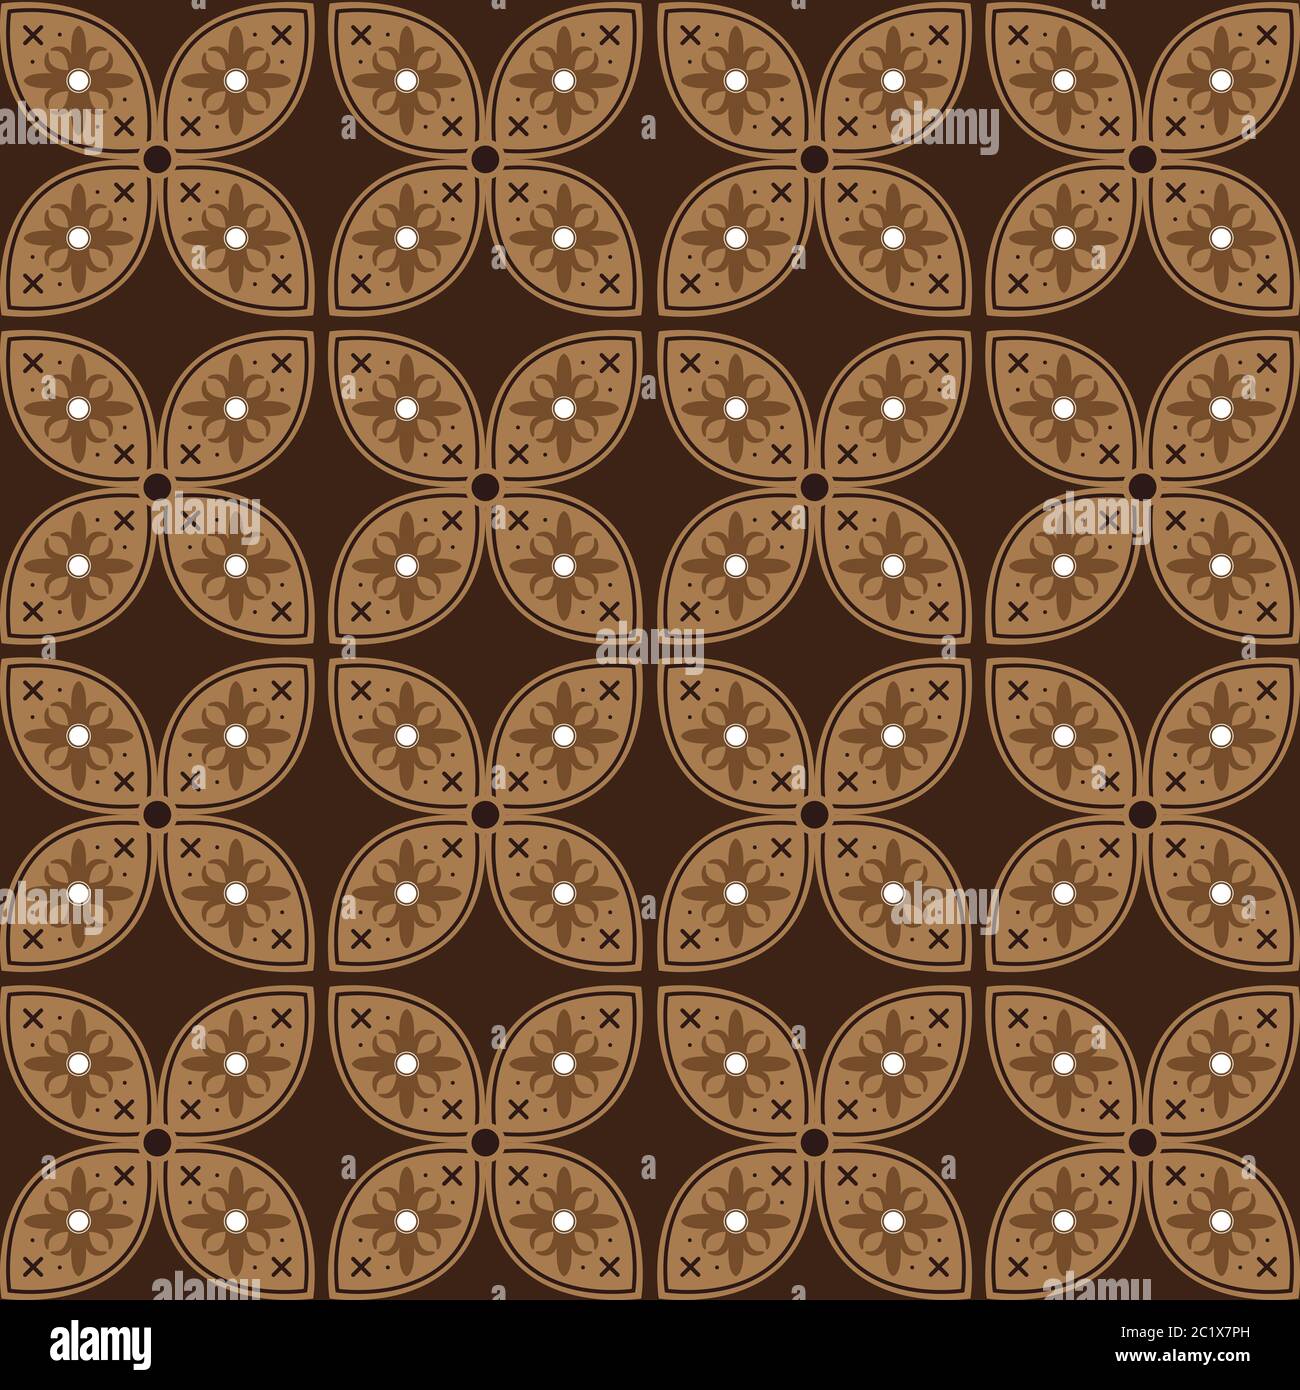 Unique circle motifs on Jogja batik design with soft brown color concept. Stock Vector